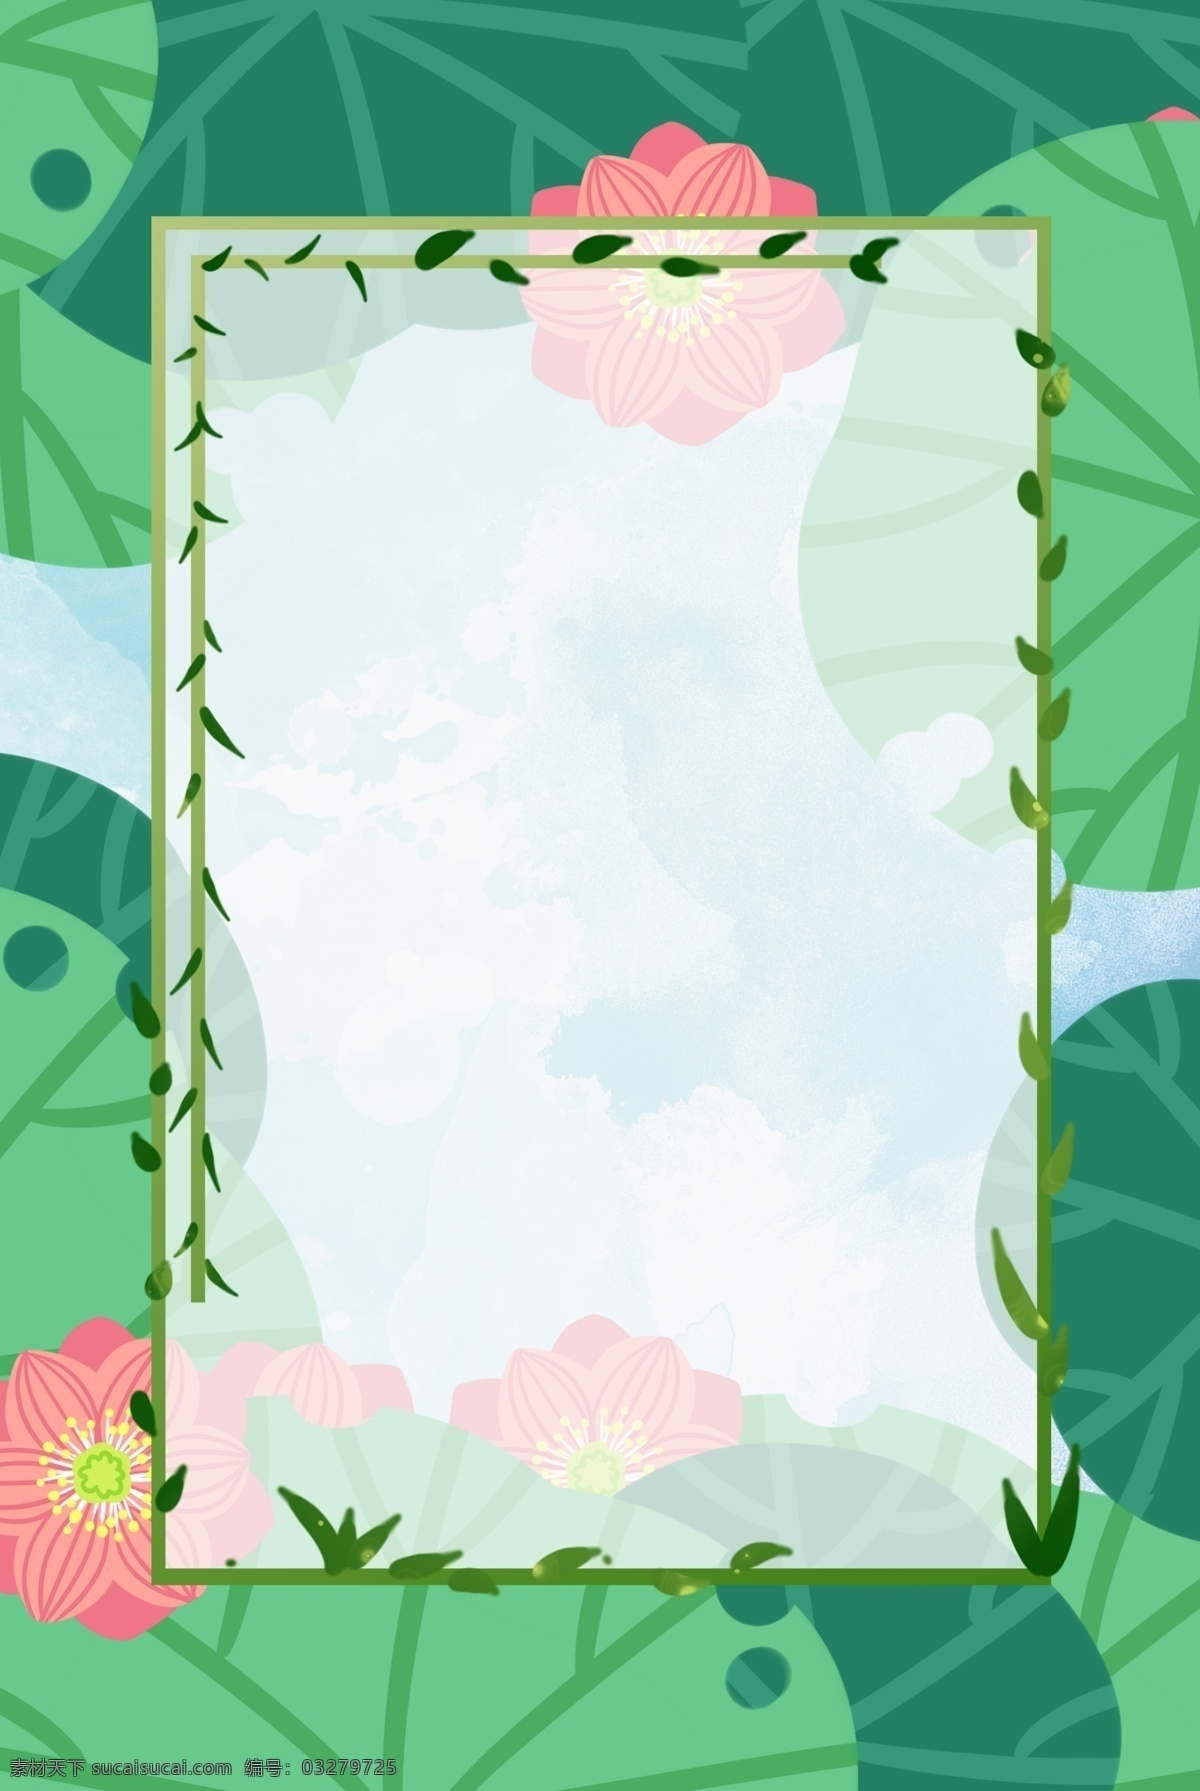 荷花边框背景 夏天 夏季 平面 开花 植物 池塘 粉色 绿色 花卉 荷叶 荷塘 荷花 莲花